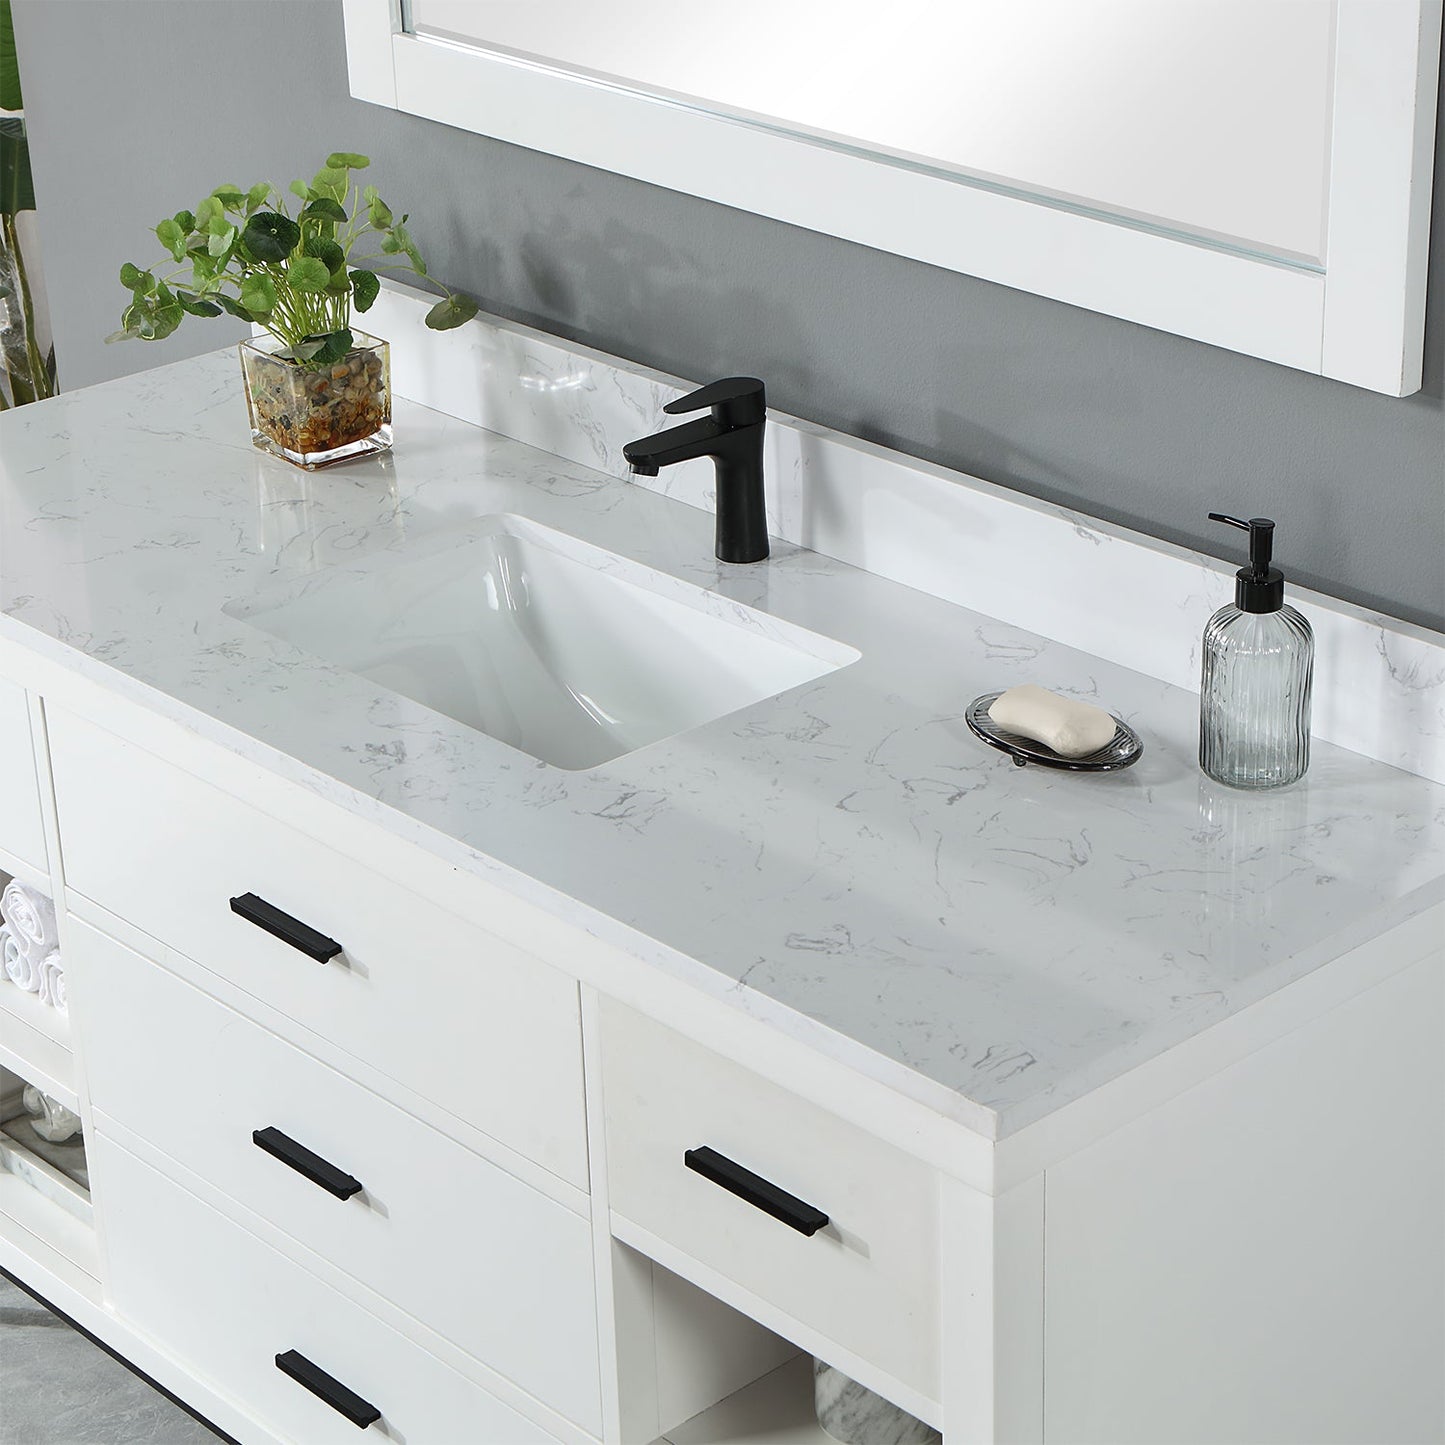 Kesia 60" Single Bathroom Vanity Set in White with Aosta White Composite Stone Countertop with Mirror